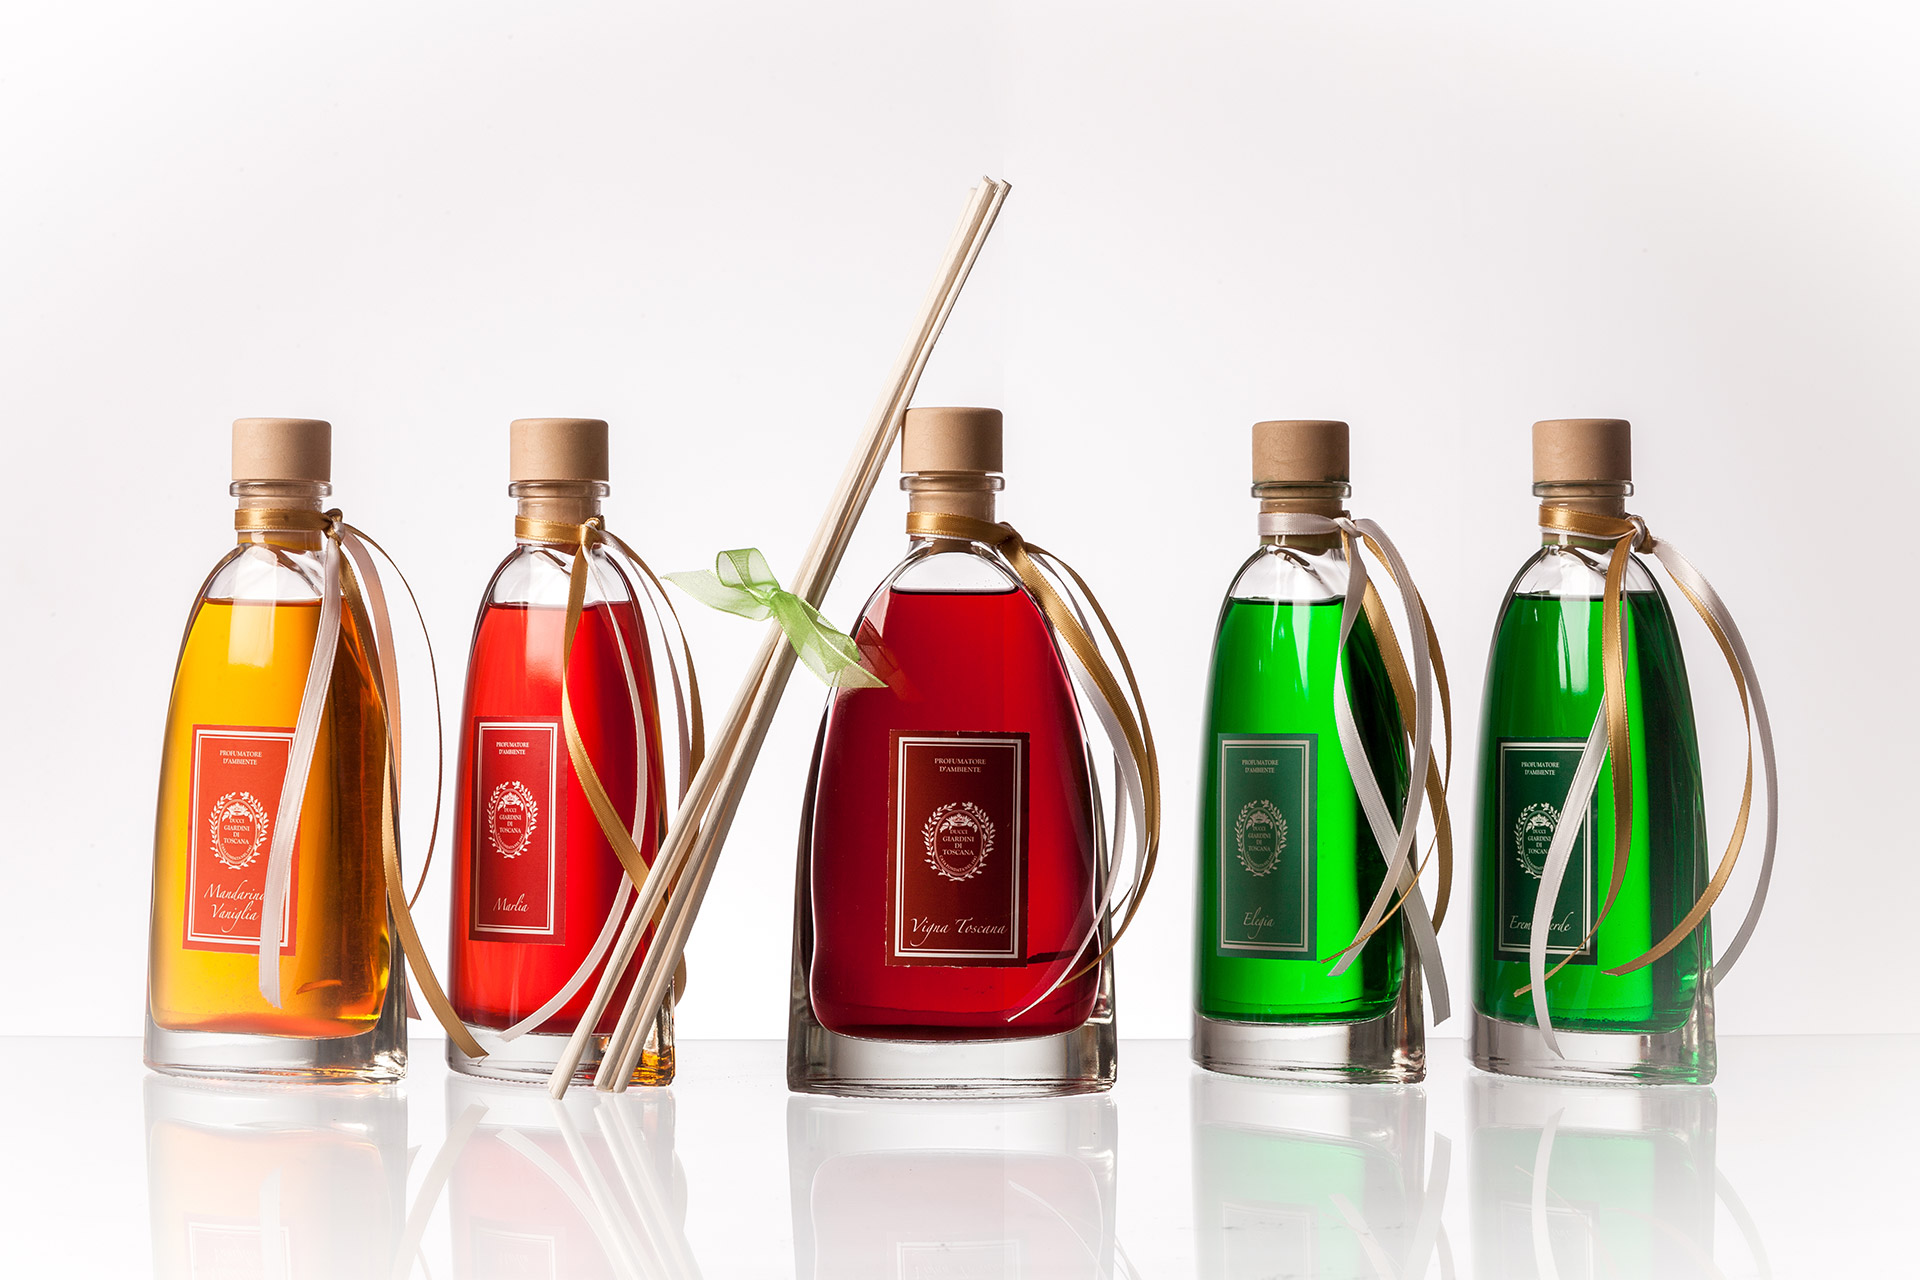 Parfumuri Giardini di Toscana - produse de lux pe baza de ingrediente organice si ecologice, cu o mare valoare naturala